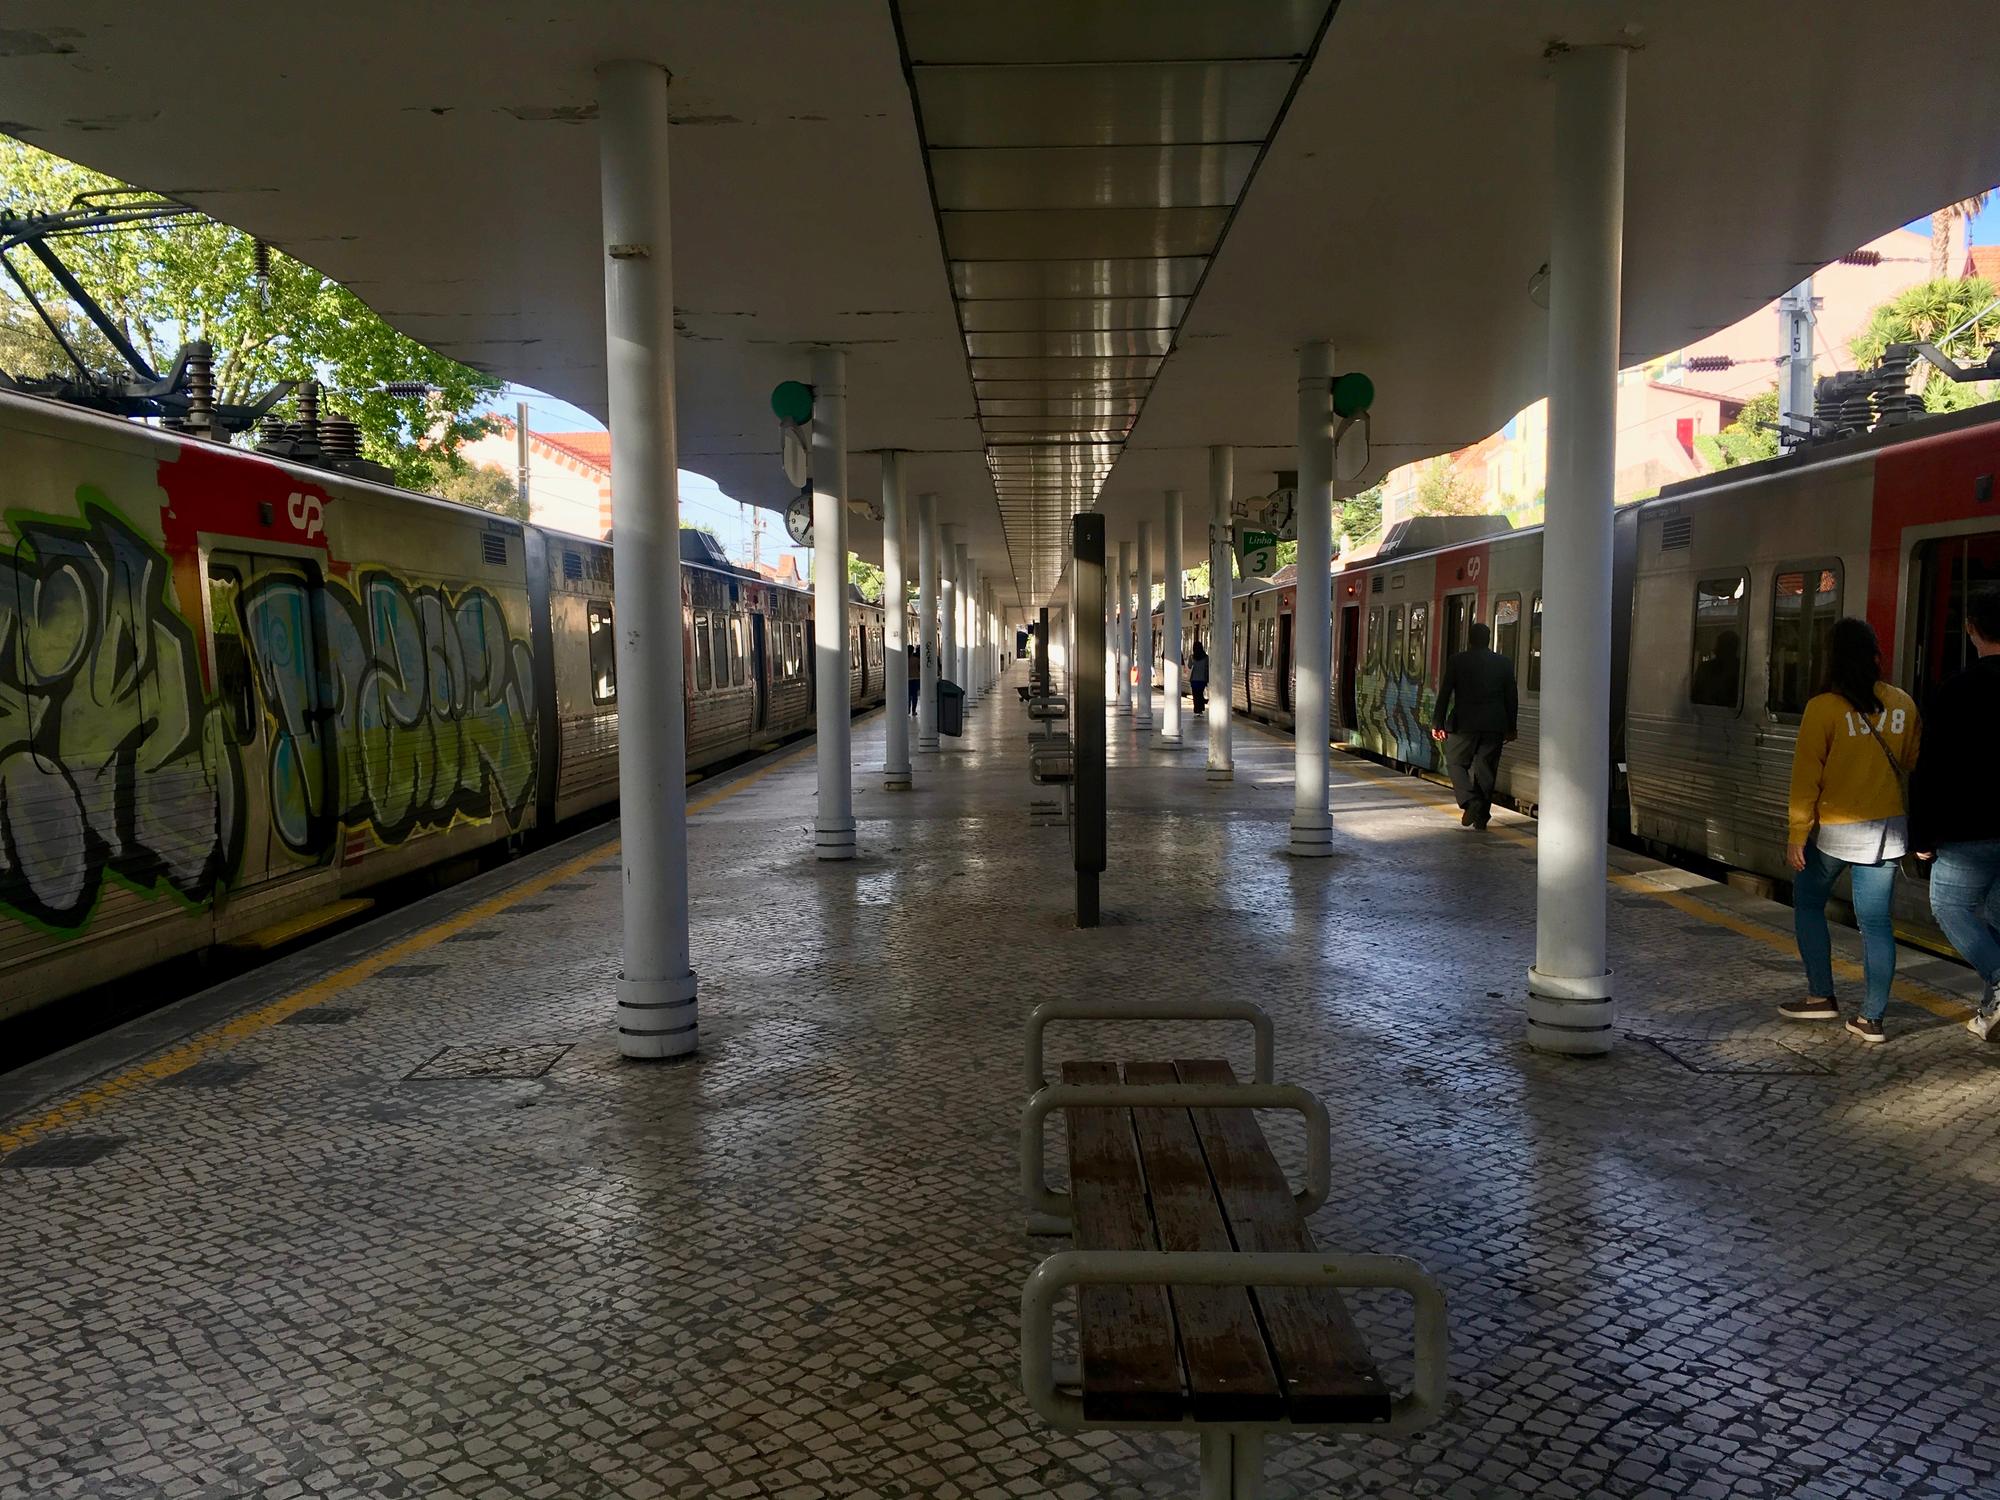 🇵🇹 Синтра, Португалия, май 2019.